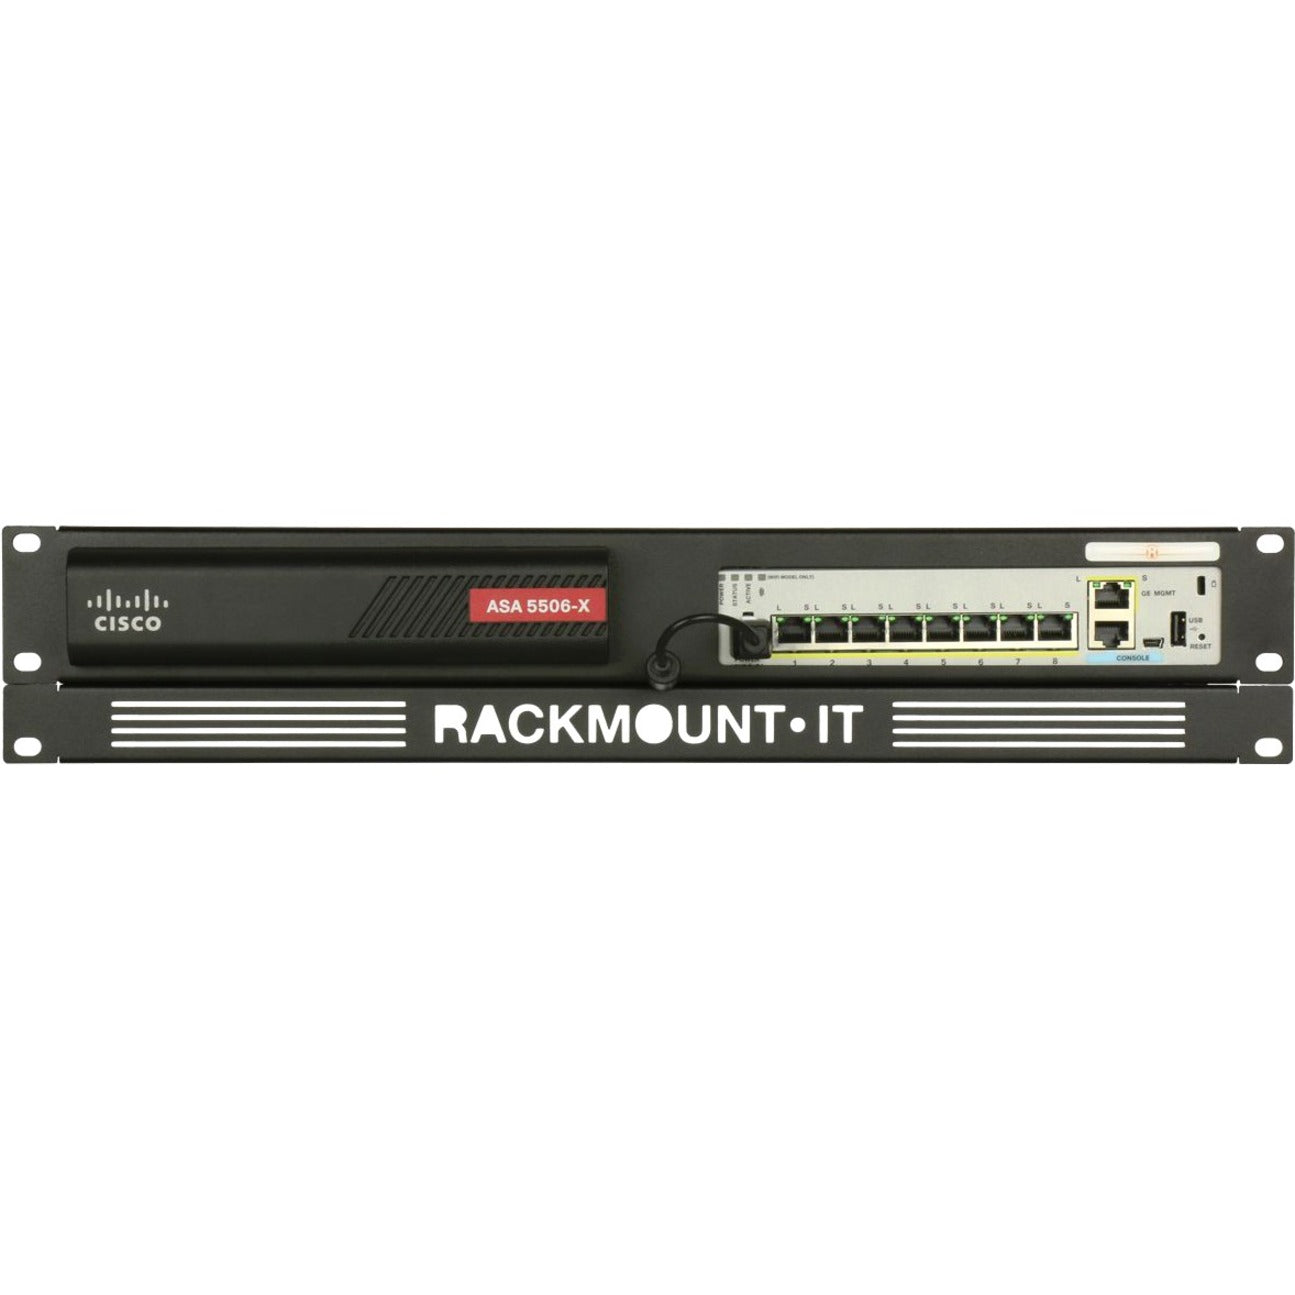 RACKMOUNT.IT RM-CI-T8 Cisrack 랙 마운트 Cisco ASA 5506-X 및 Firepower 1010과 호환 가능.